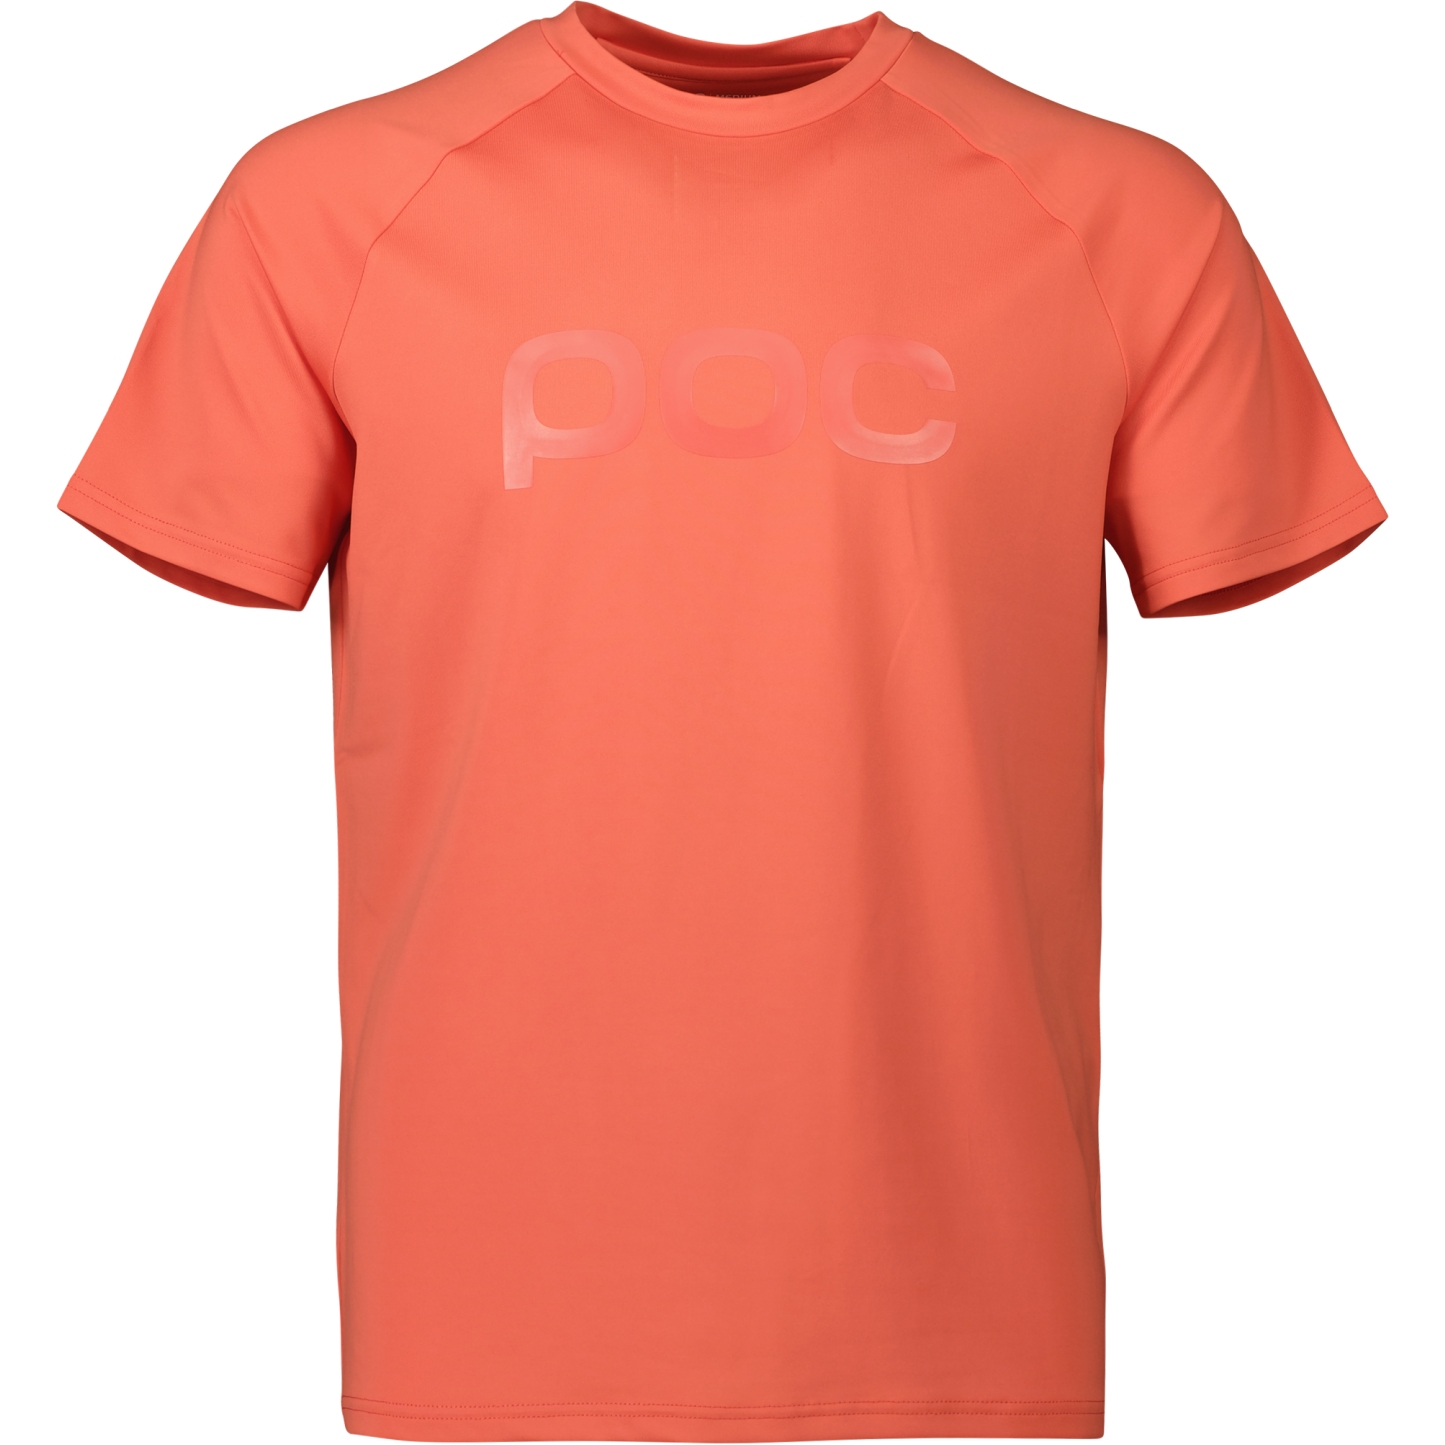 Produktbild von POC Reform Enduro T-Shirt Herren - 1731 Ammolite Coral